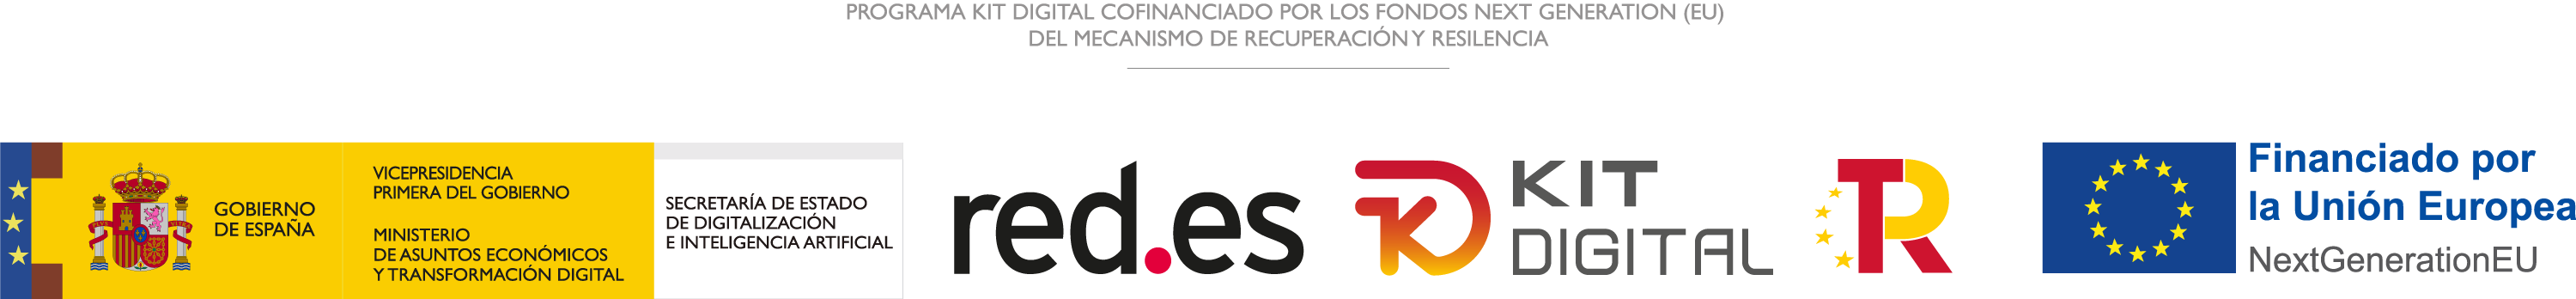 Logos de gobierno de españa, red.es, kit digital, unión europea